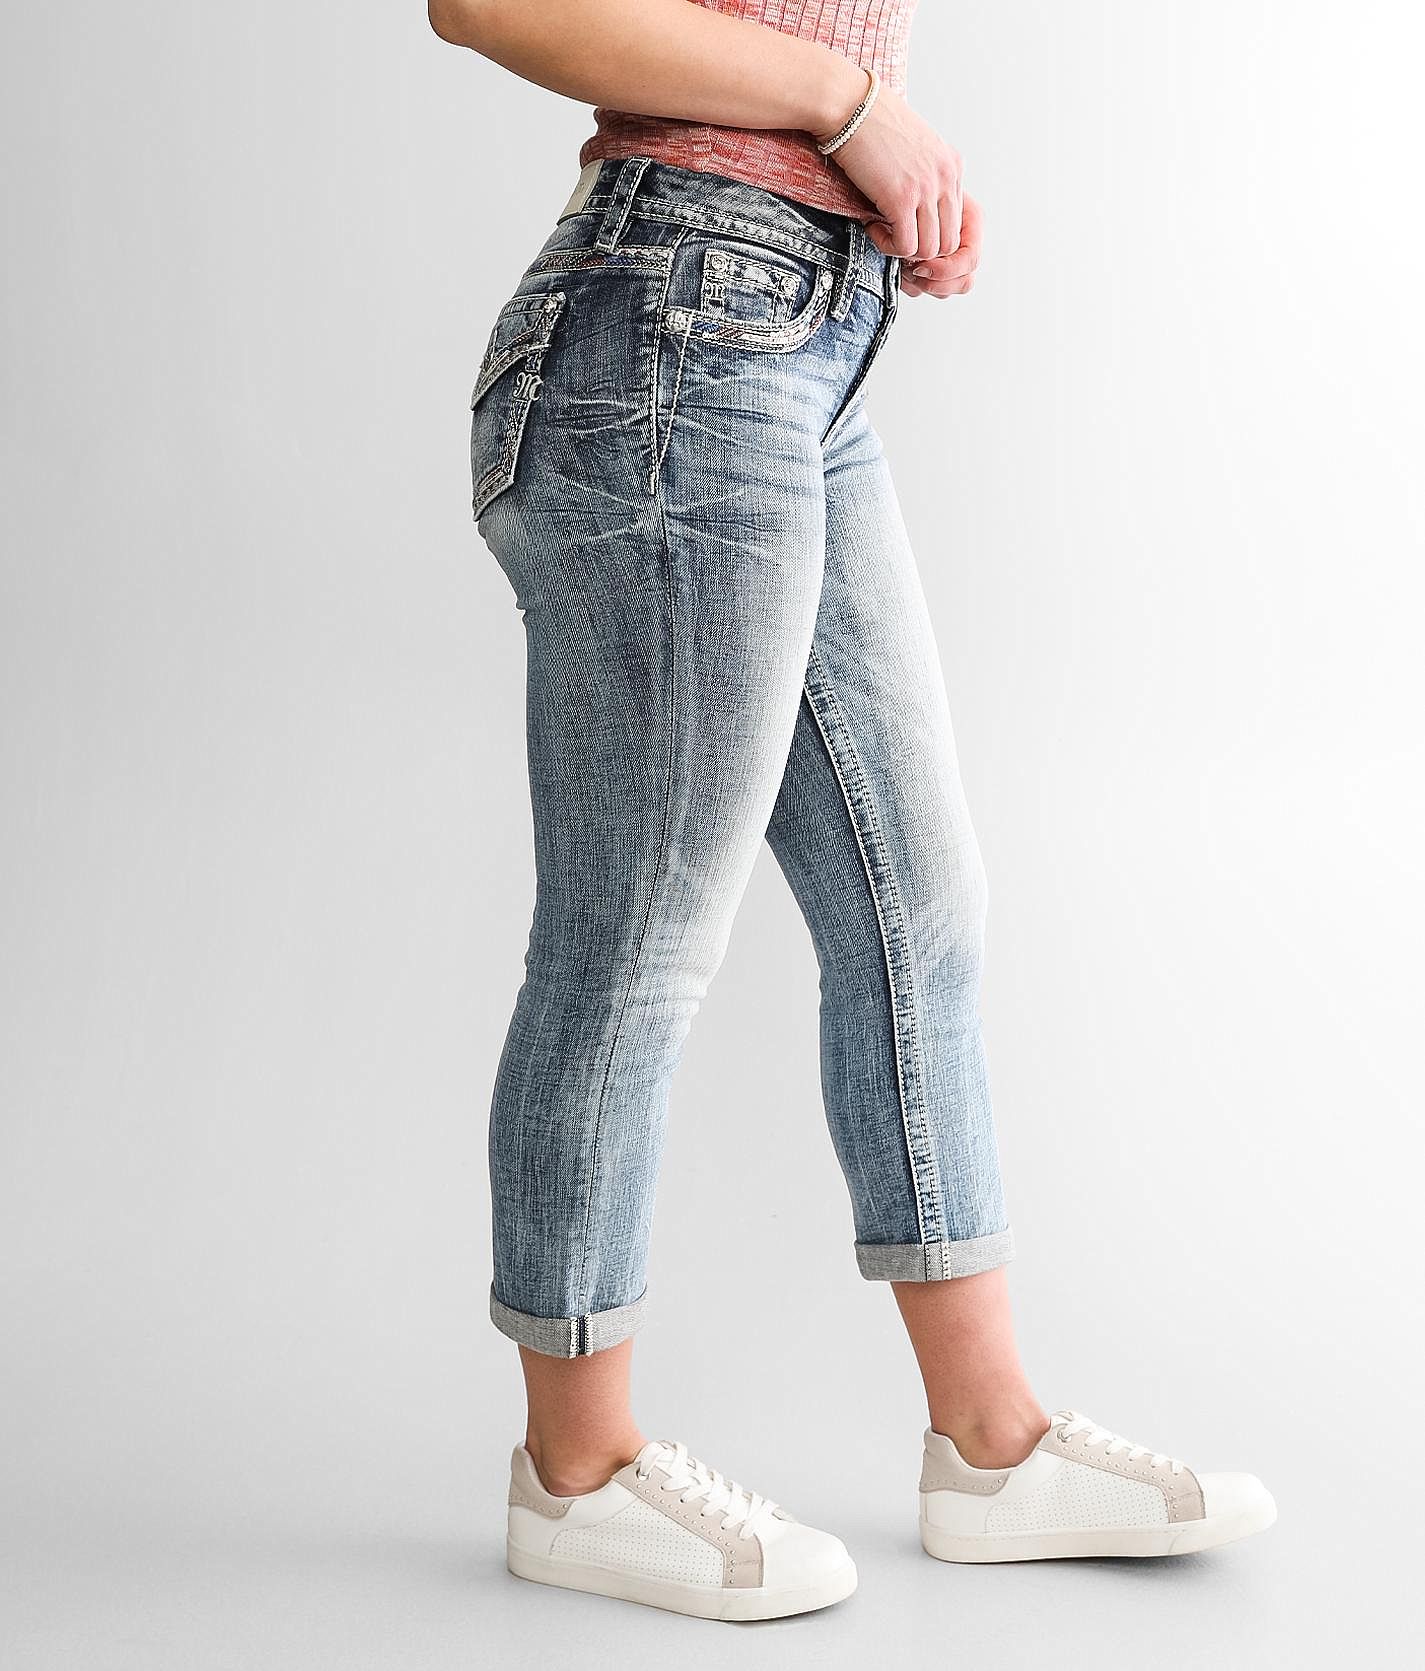 Miss Me Mid-Rise Stretch Capri Jean - Women's Jeans in M383